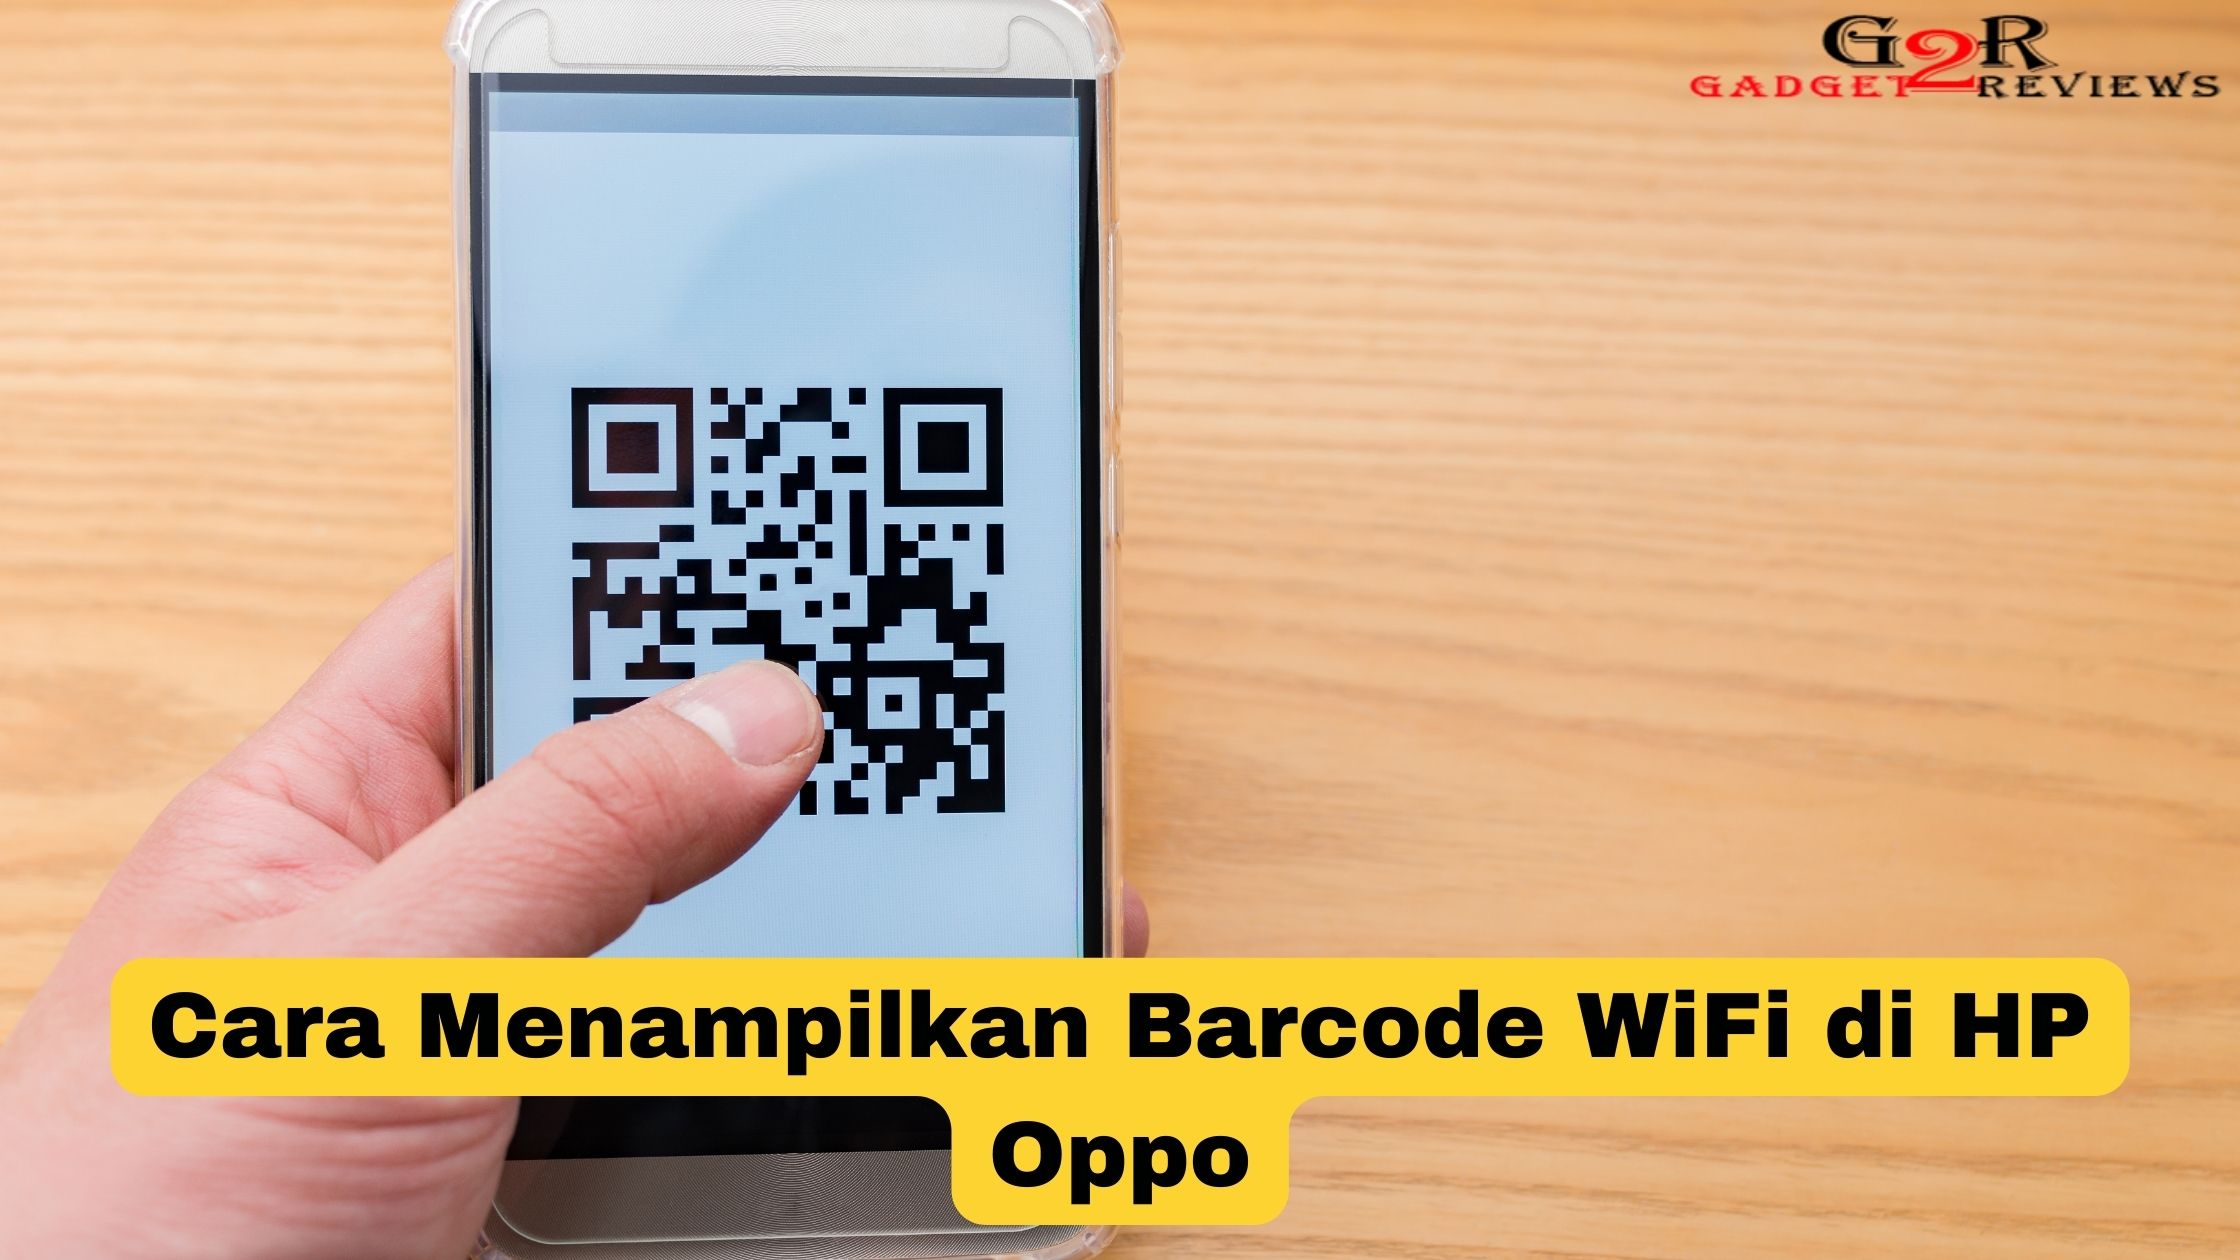 Cara Menampilkan Barcode WiFi di HP Oppo